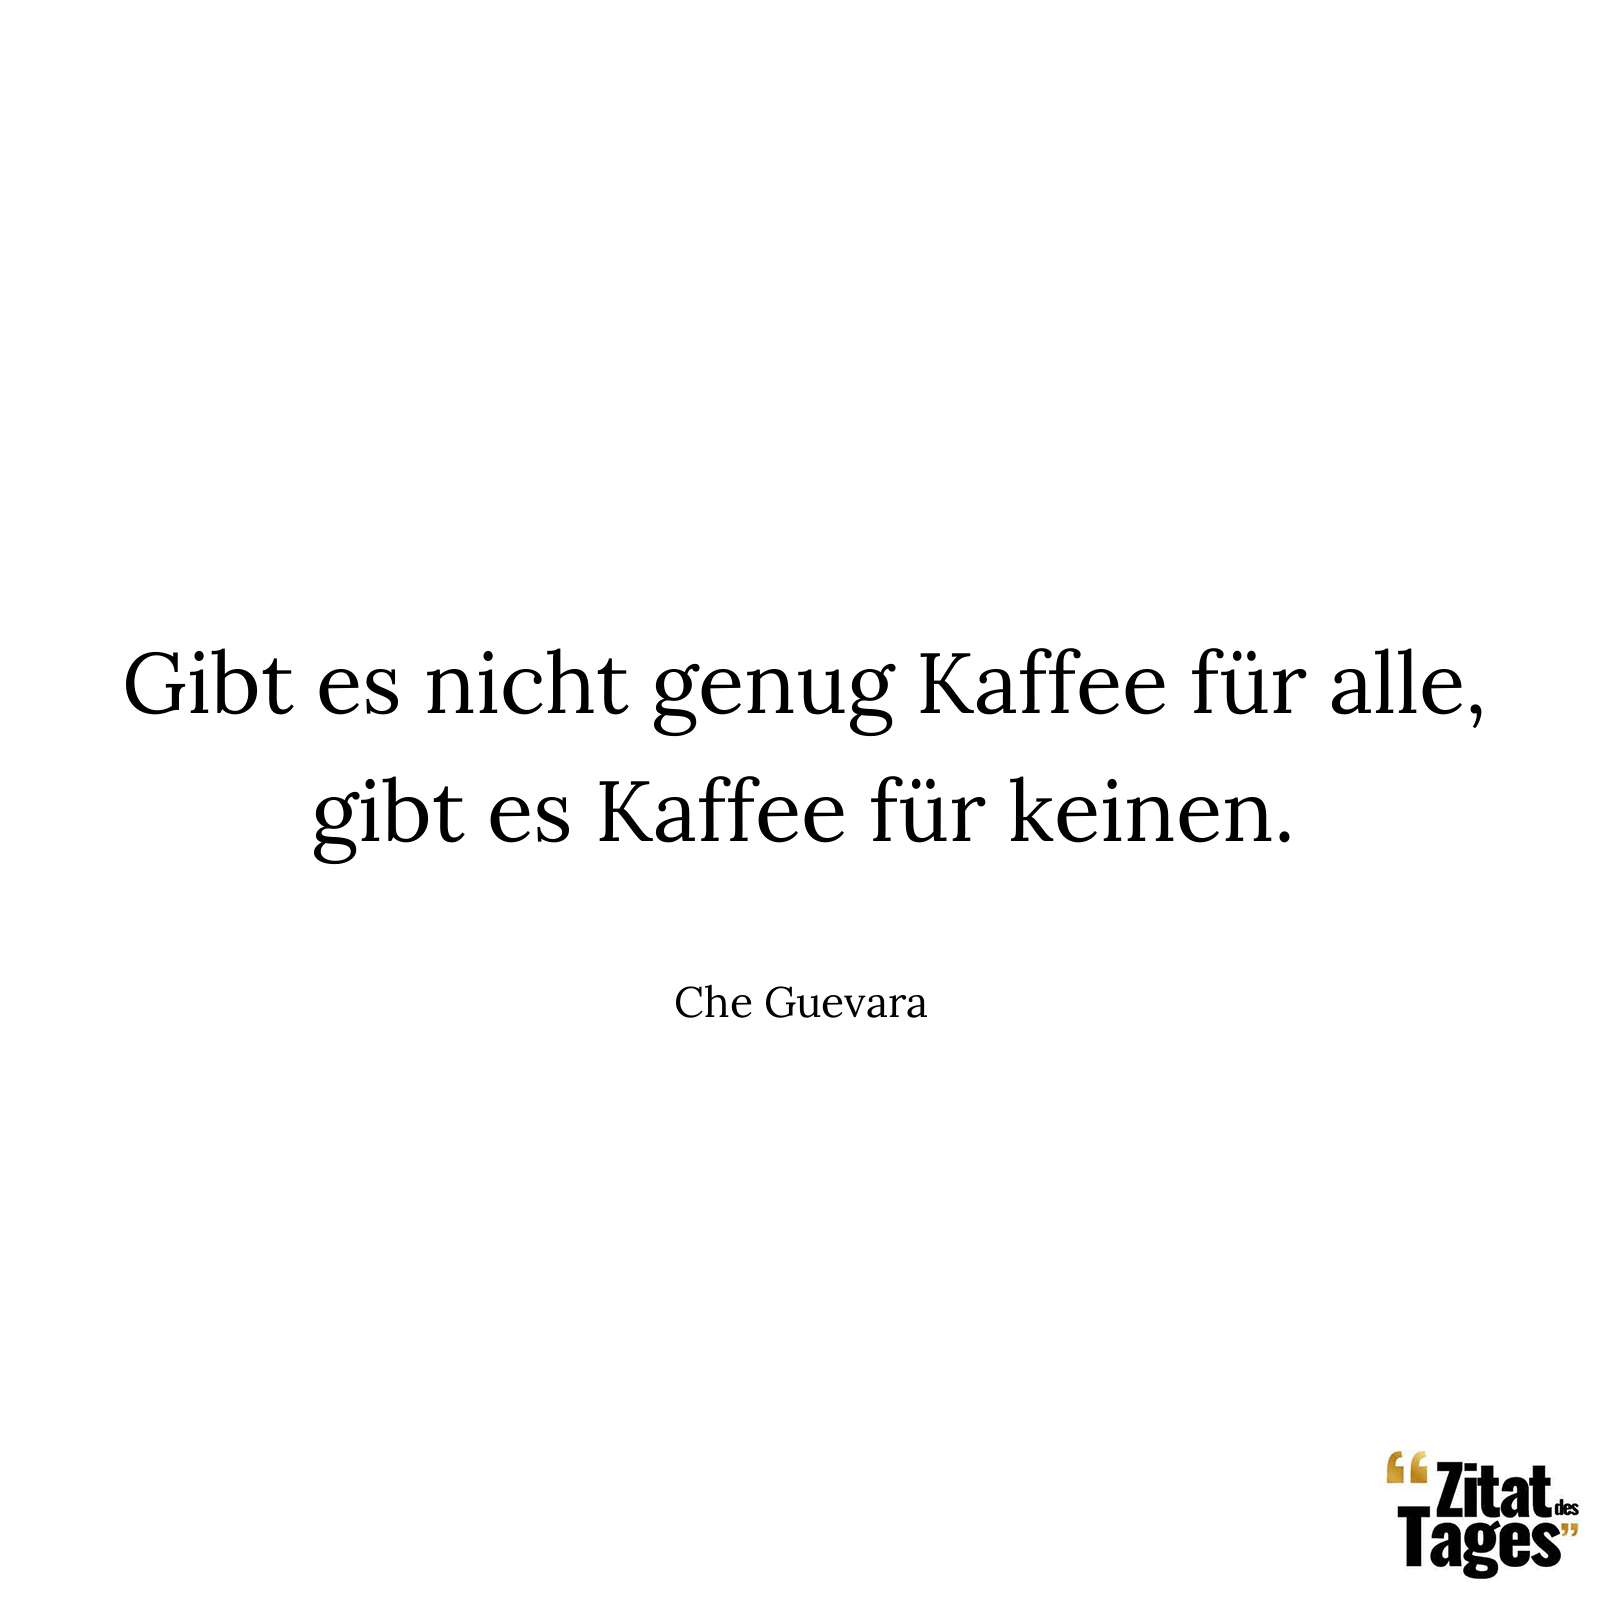 Gibt es nicht genug Kaffee für alle, gibt es Kaffee für keinen. - Che Guevara